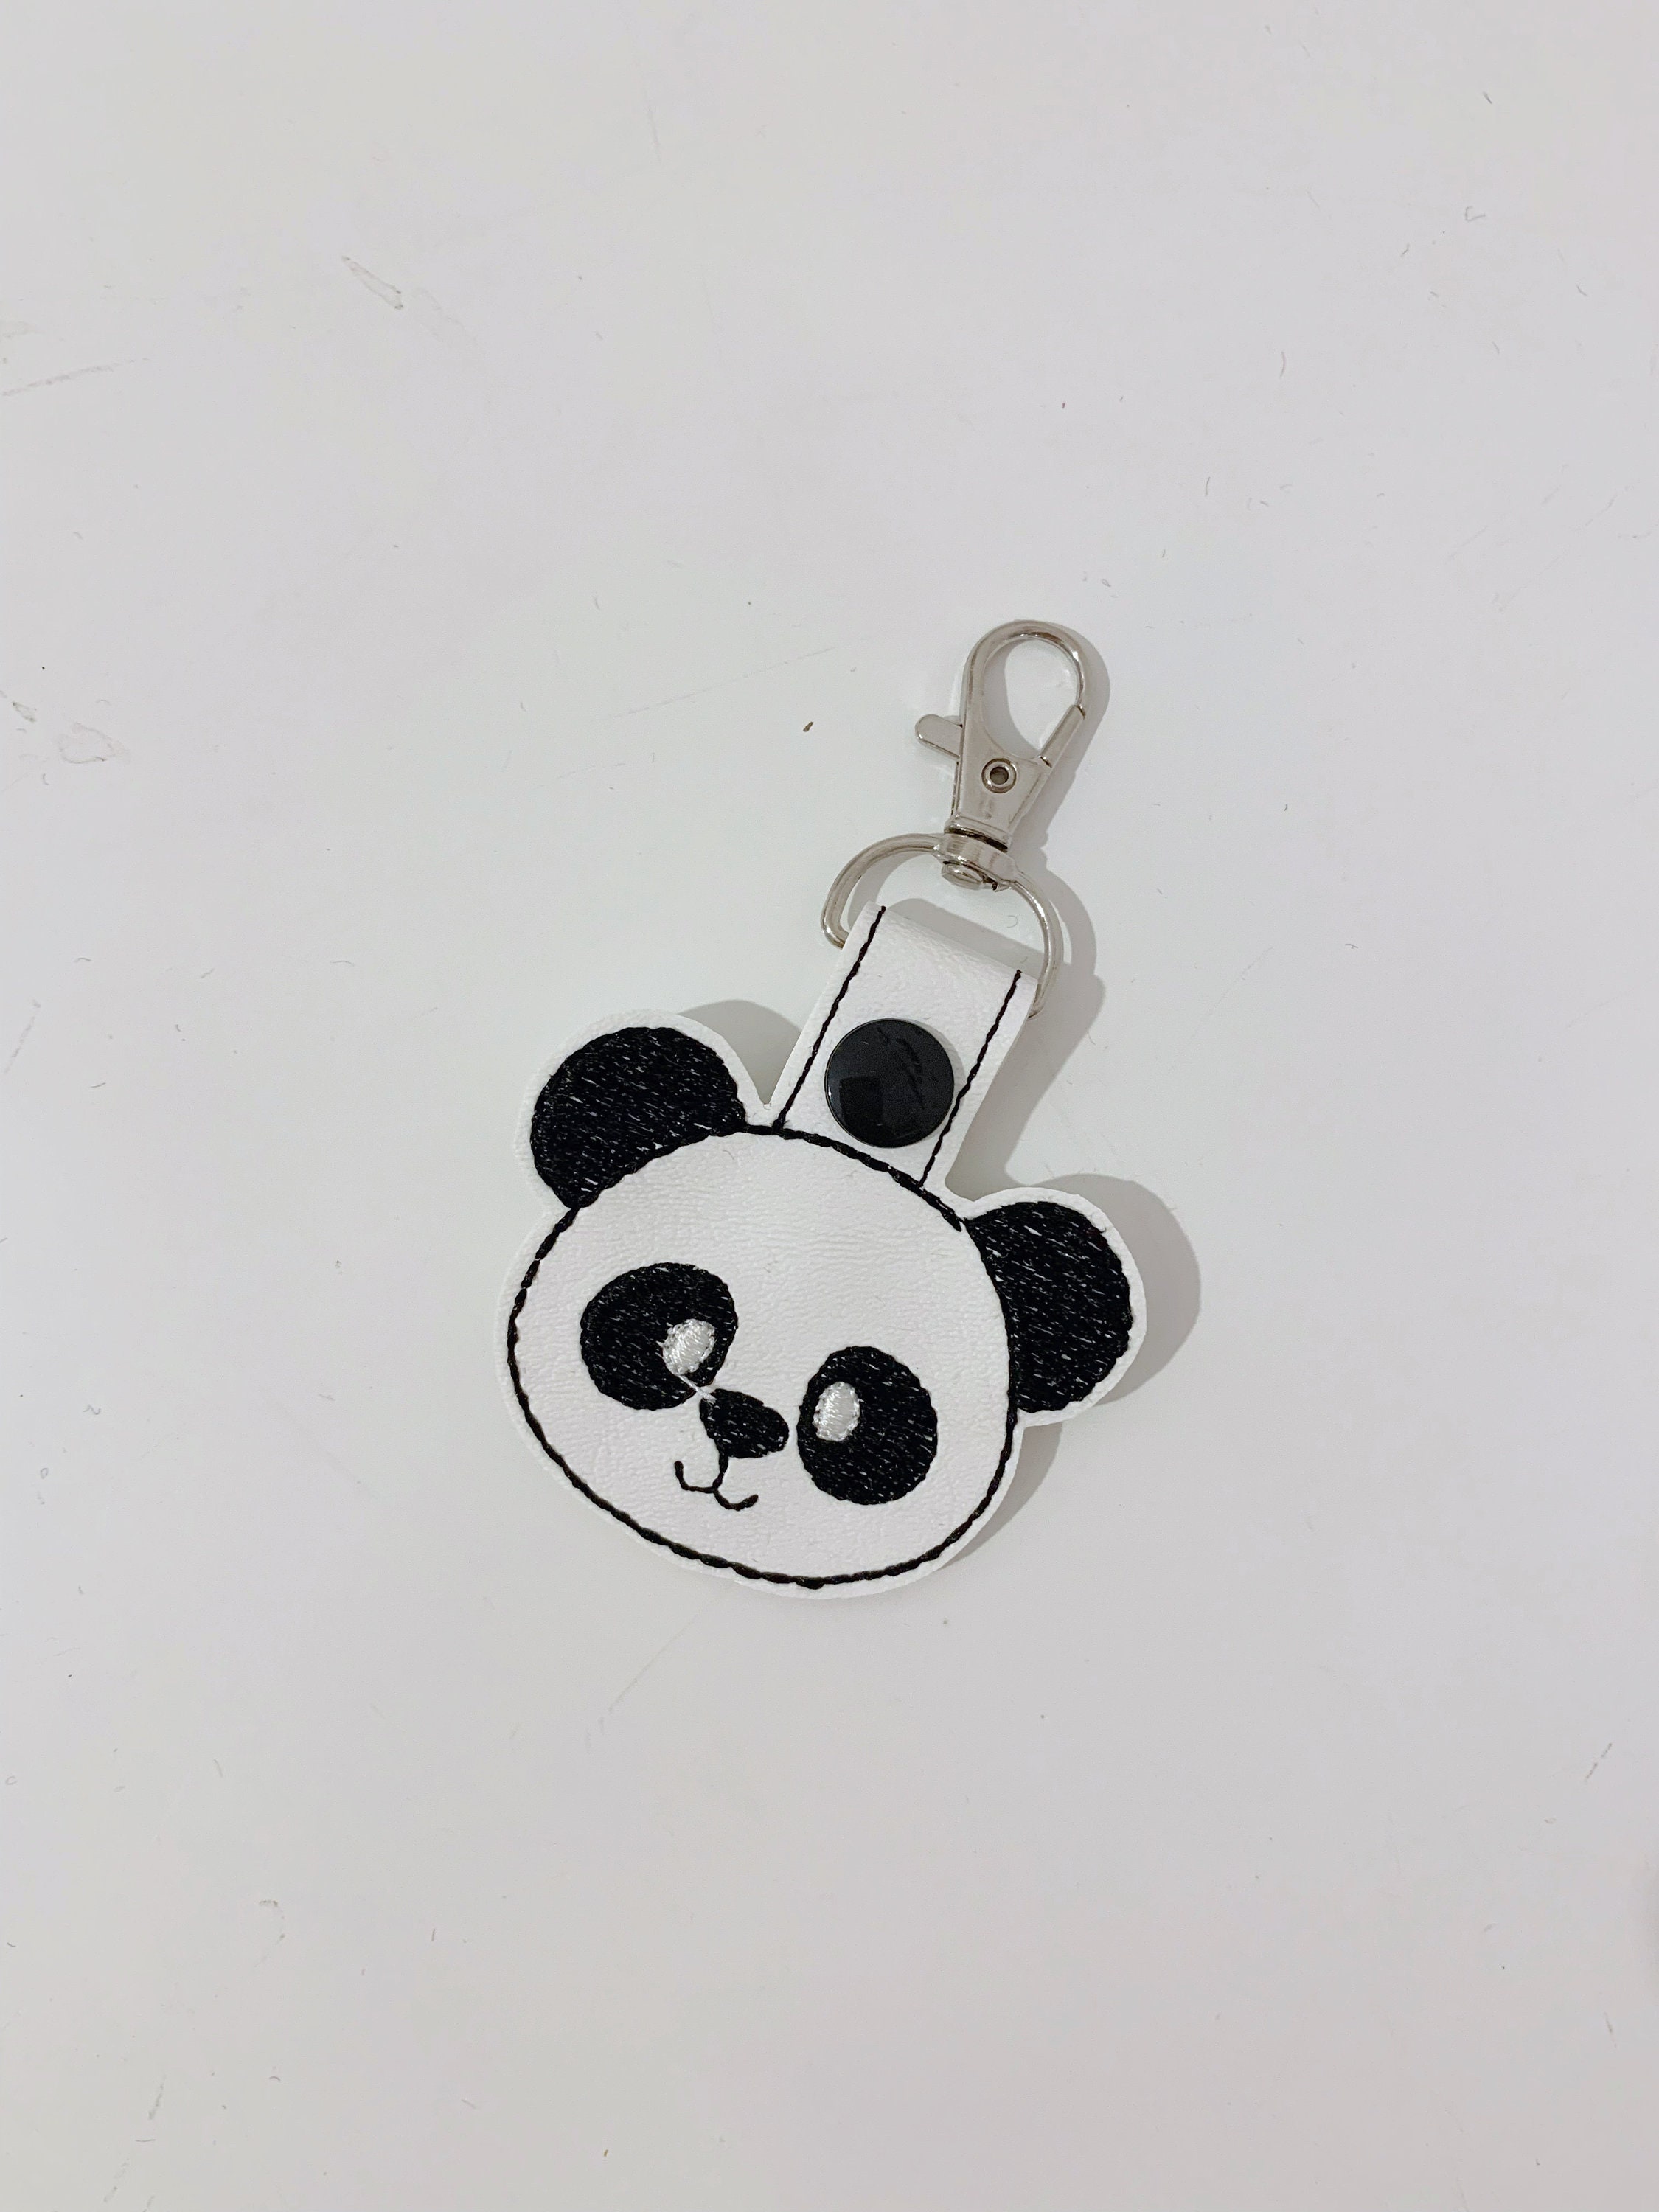 Cute panda Key Ring / fob / keyring / embroidery / bag charm / planner charm